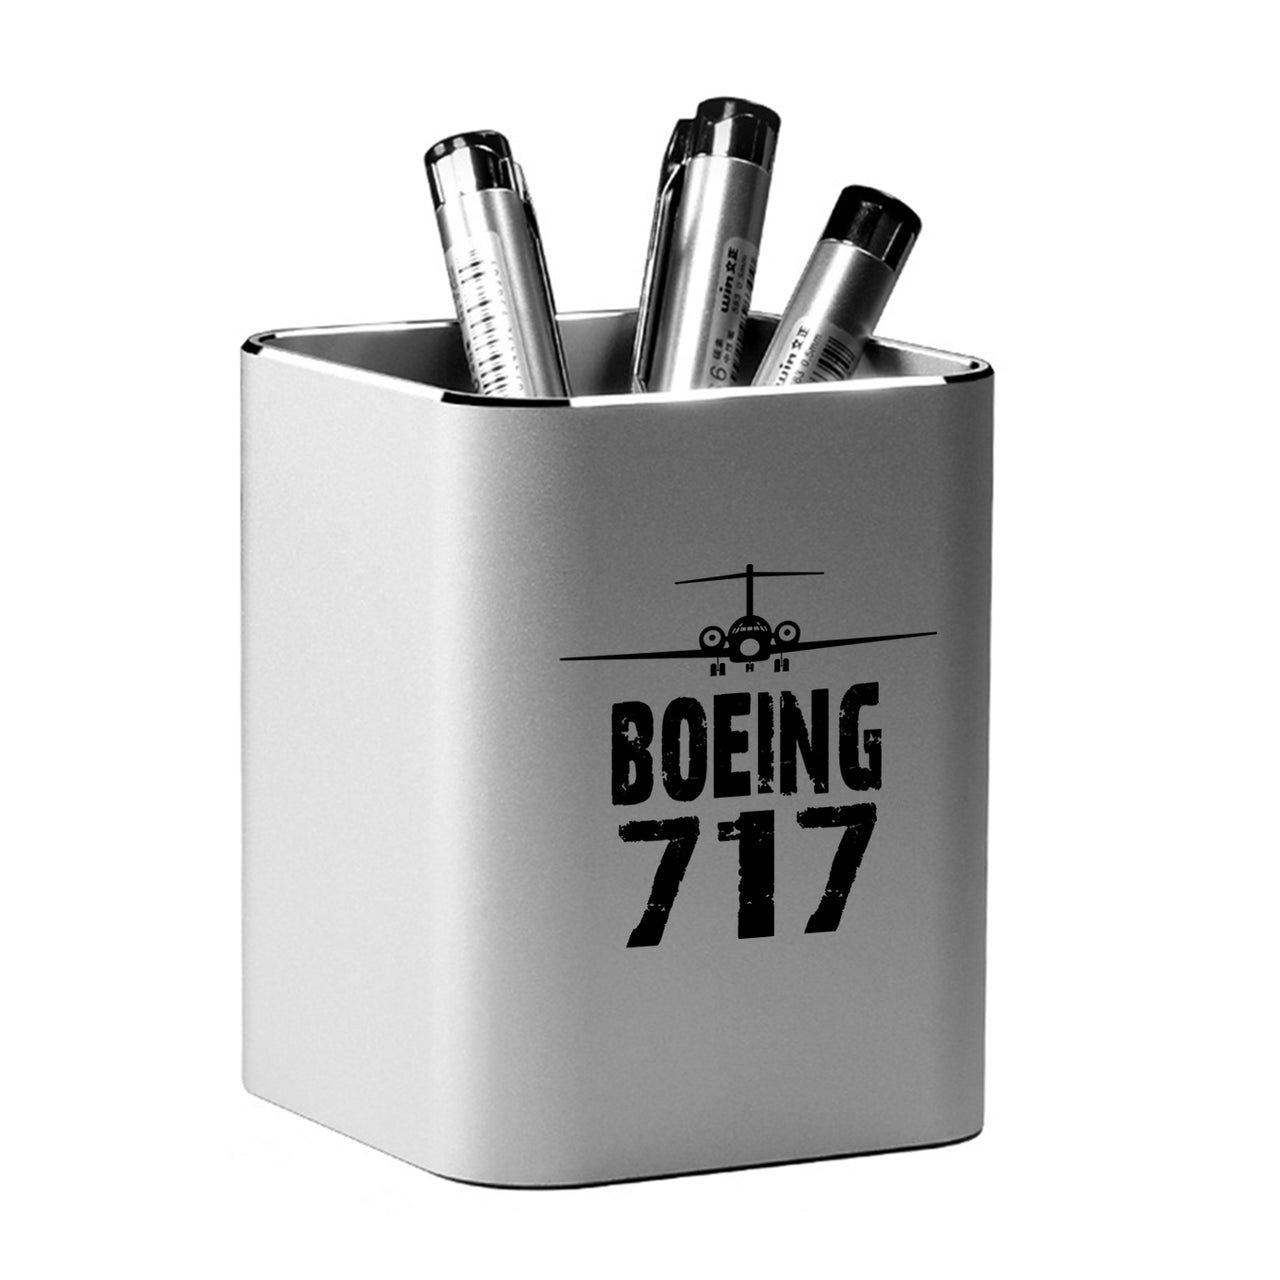 Boeing 717 & Plane Designed Aluminium Alloy Pen Holders